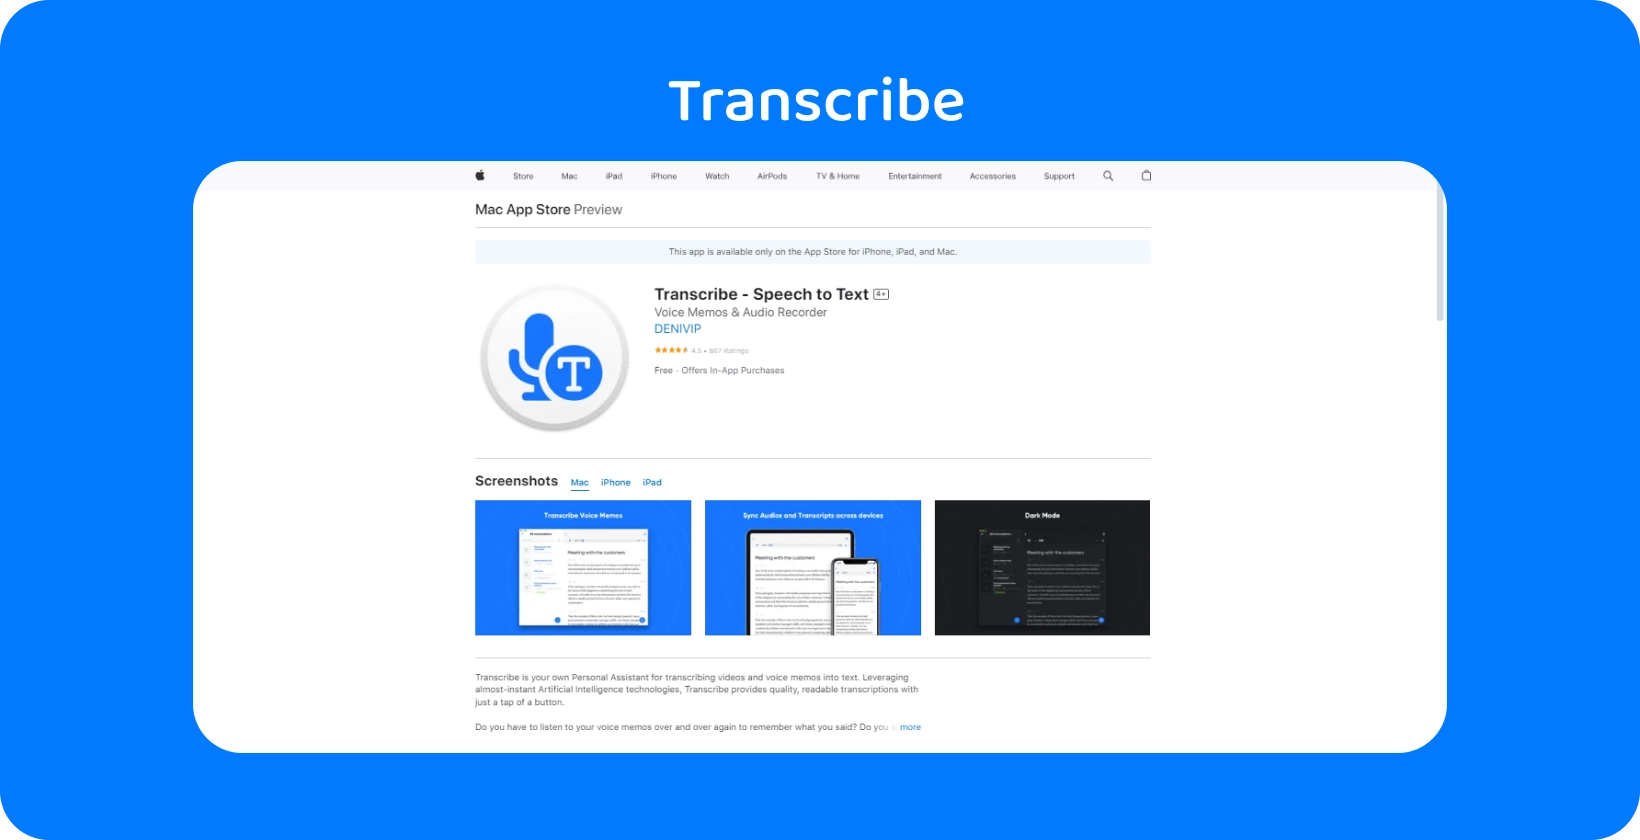 Transkribavimo programos Mac App Store ekrano kopija, pabrėžianti jos kalbos konvertavimo į tekstą galimybes.